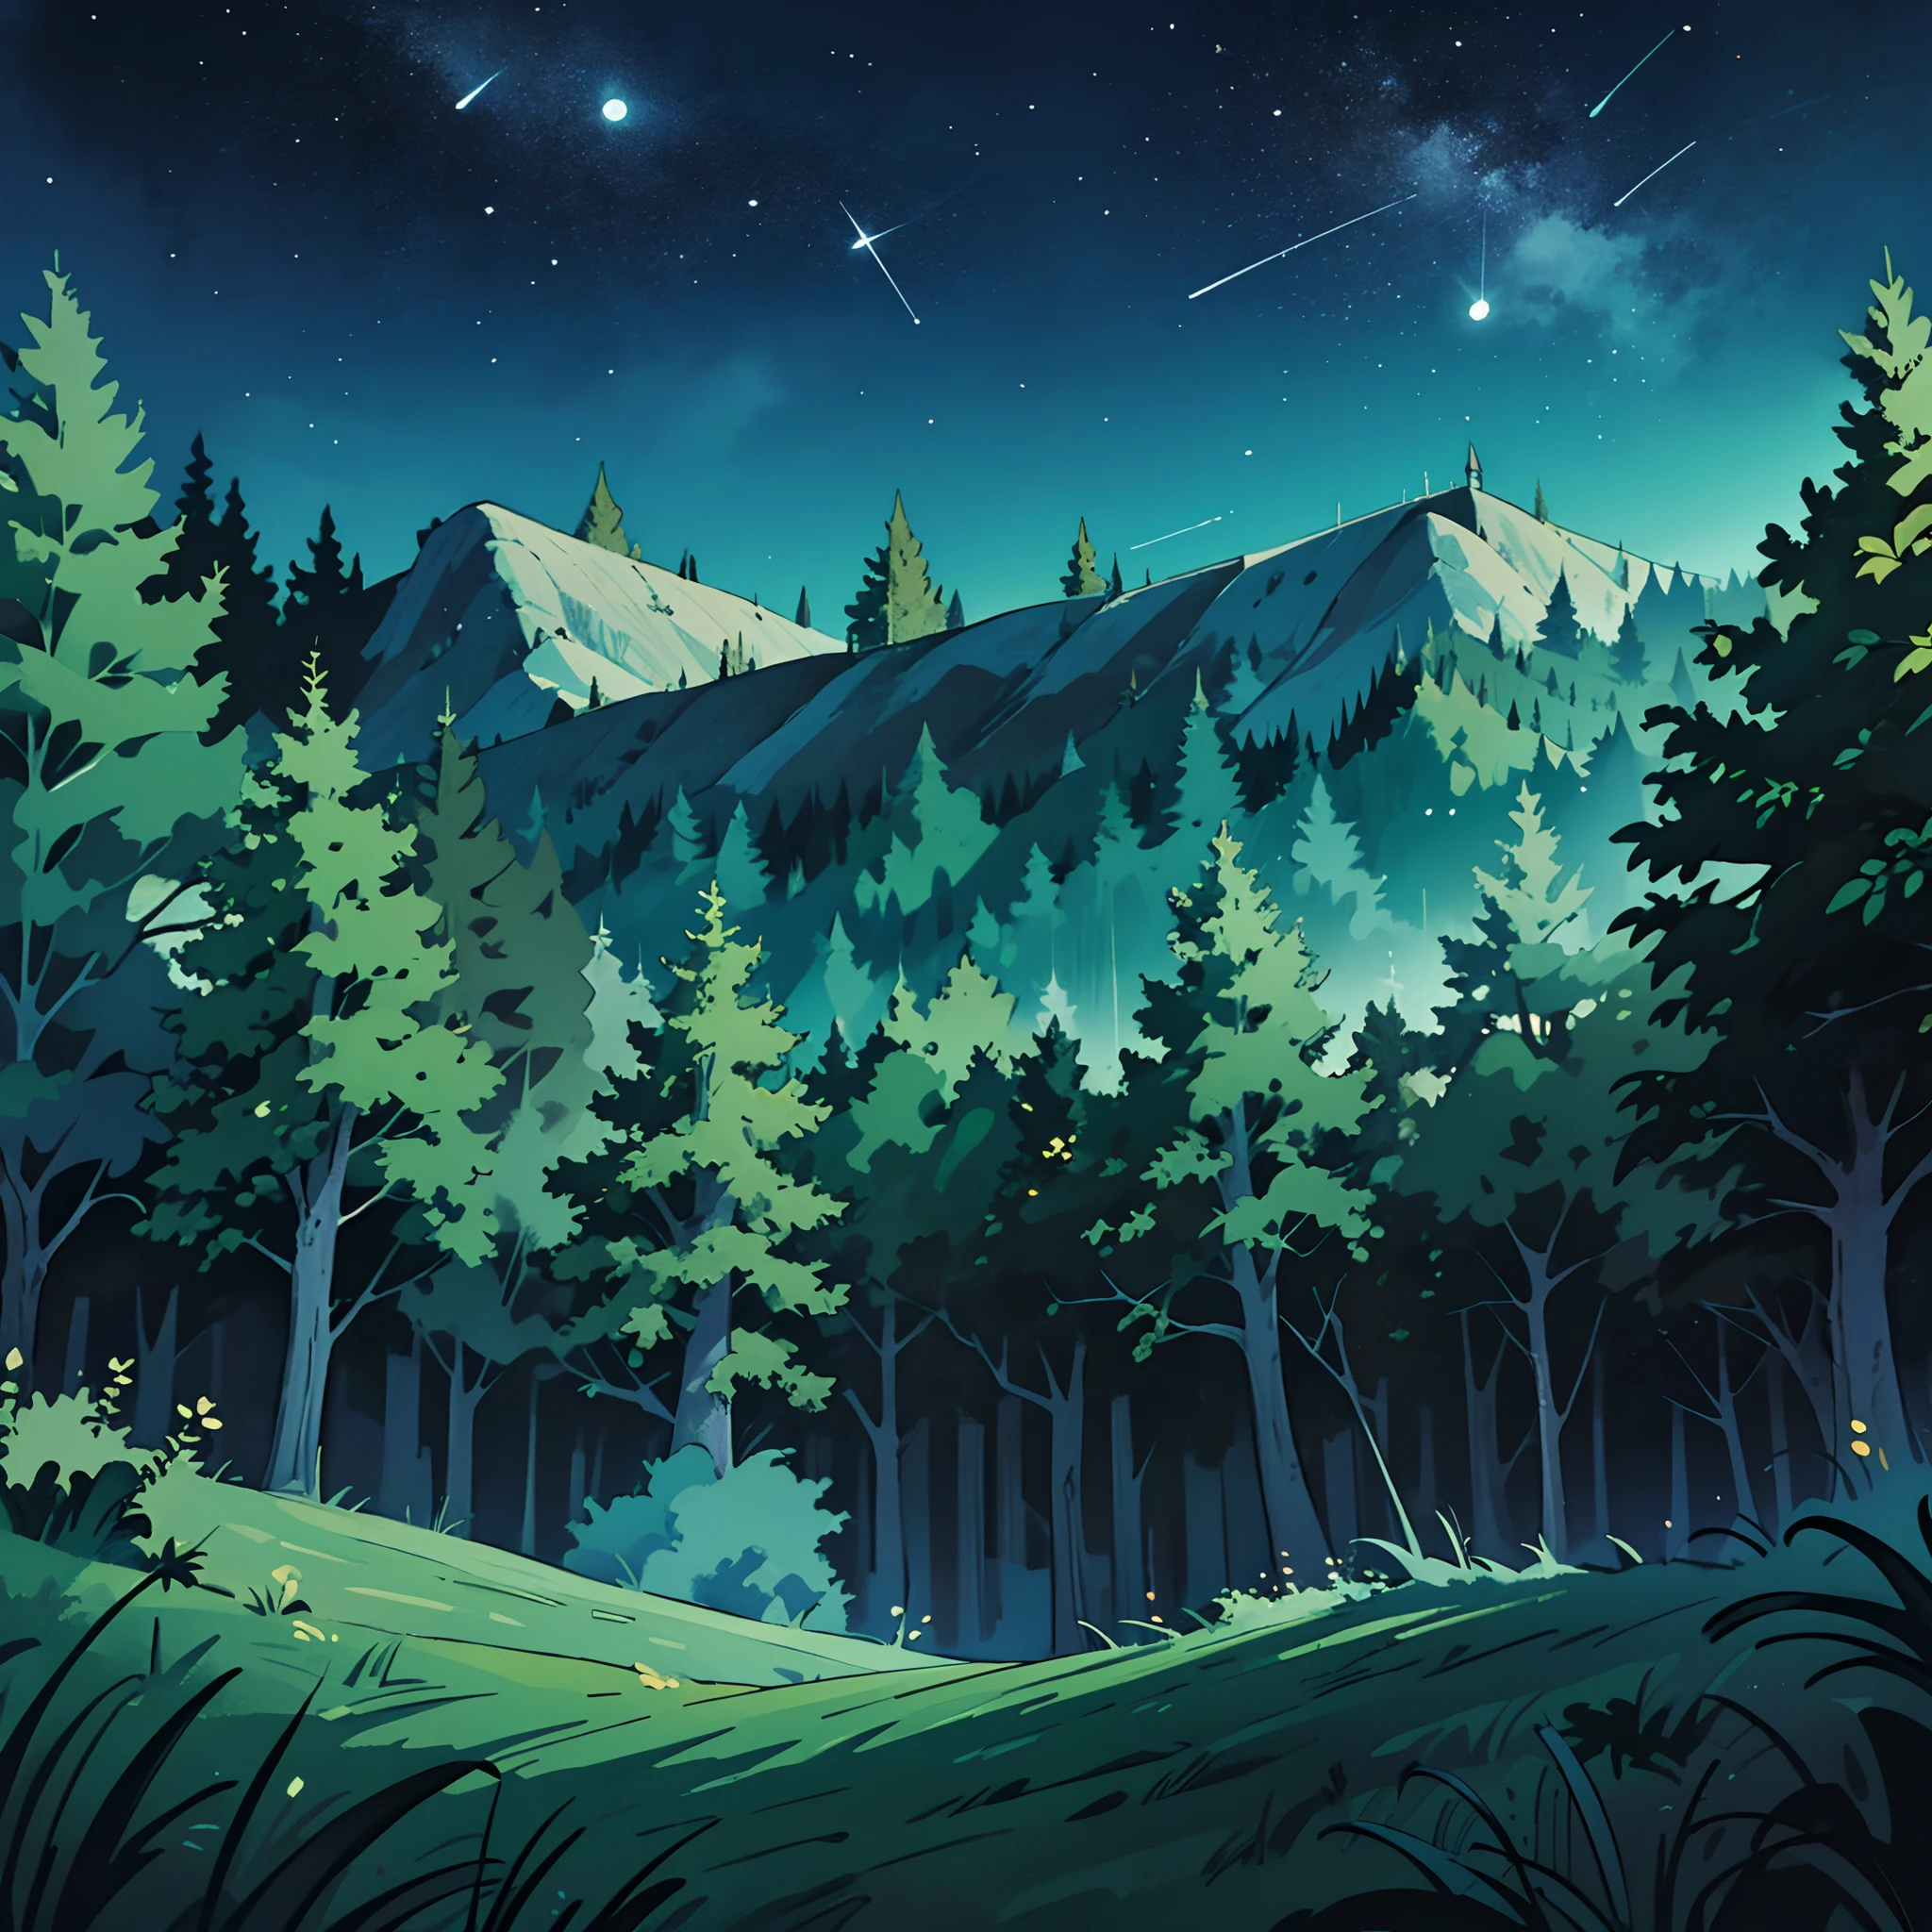 森林夏夜的广角镜头, 荒野中生机勃勃的绿树和明亮清澈的夜空. 动漫背景